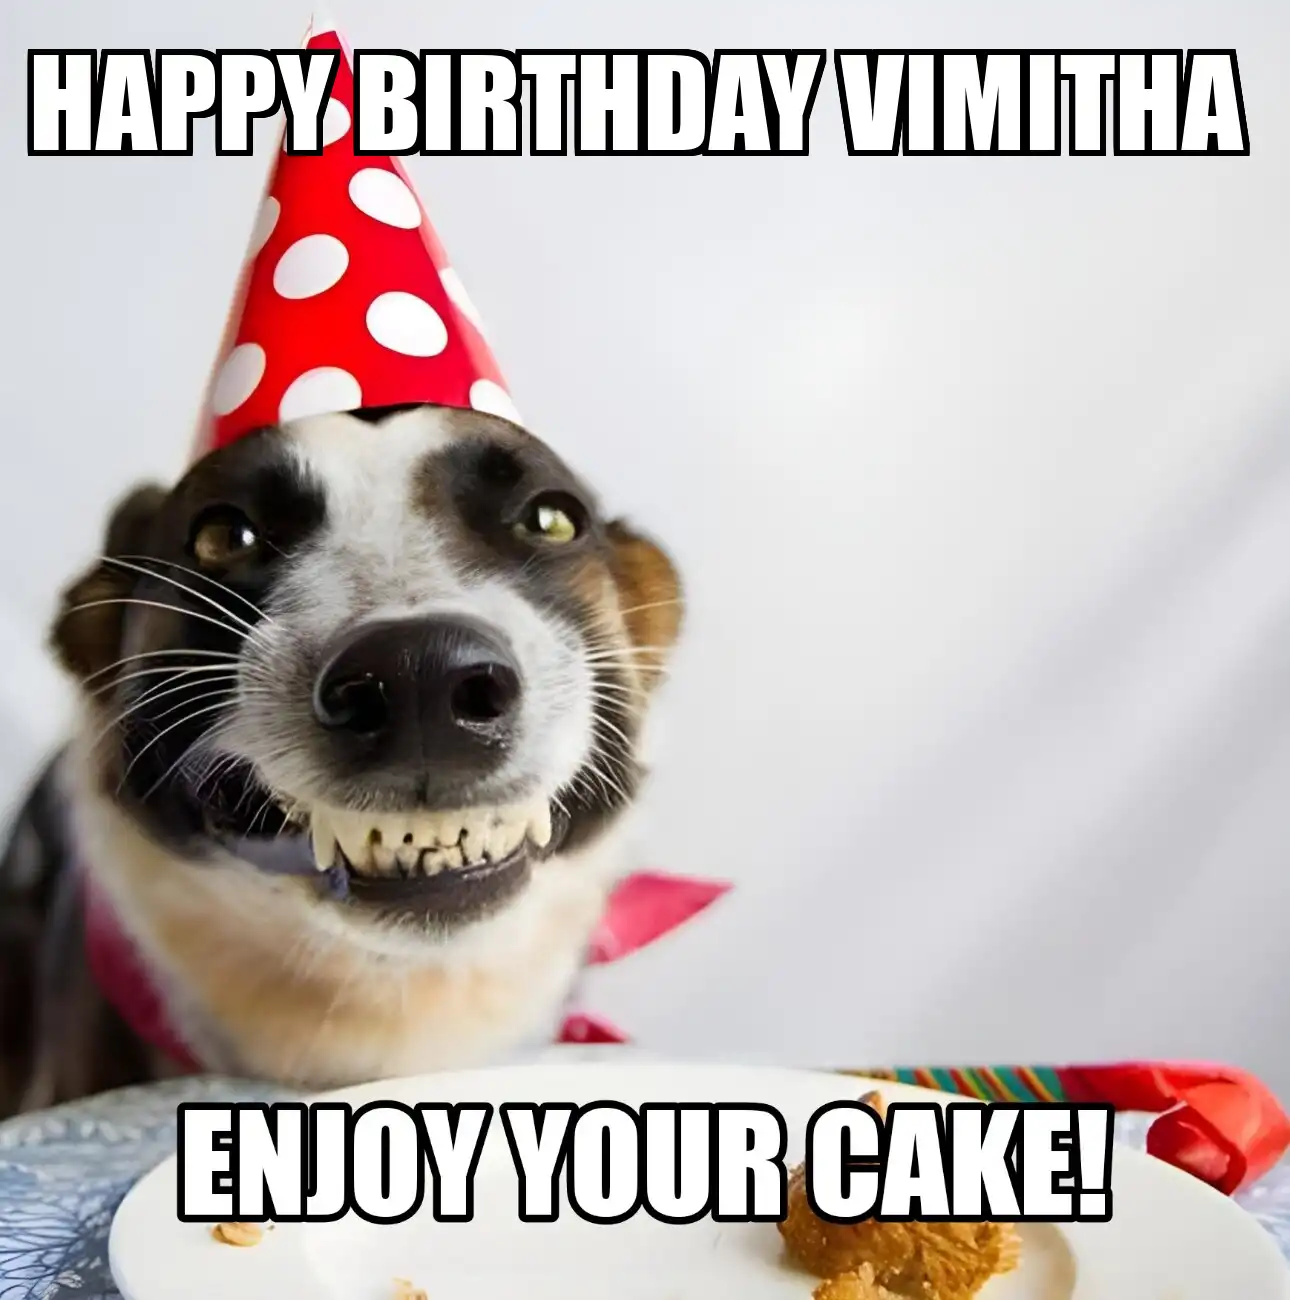 Happy Birthday Vimitha Enjoy Your Cake Dog Meme